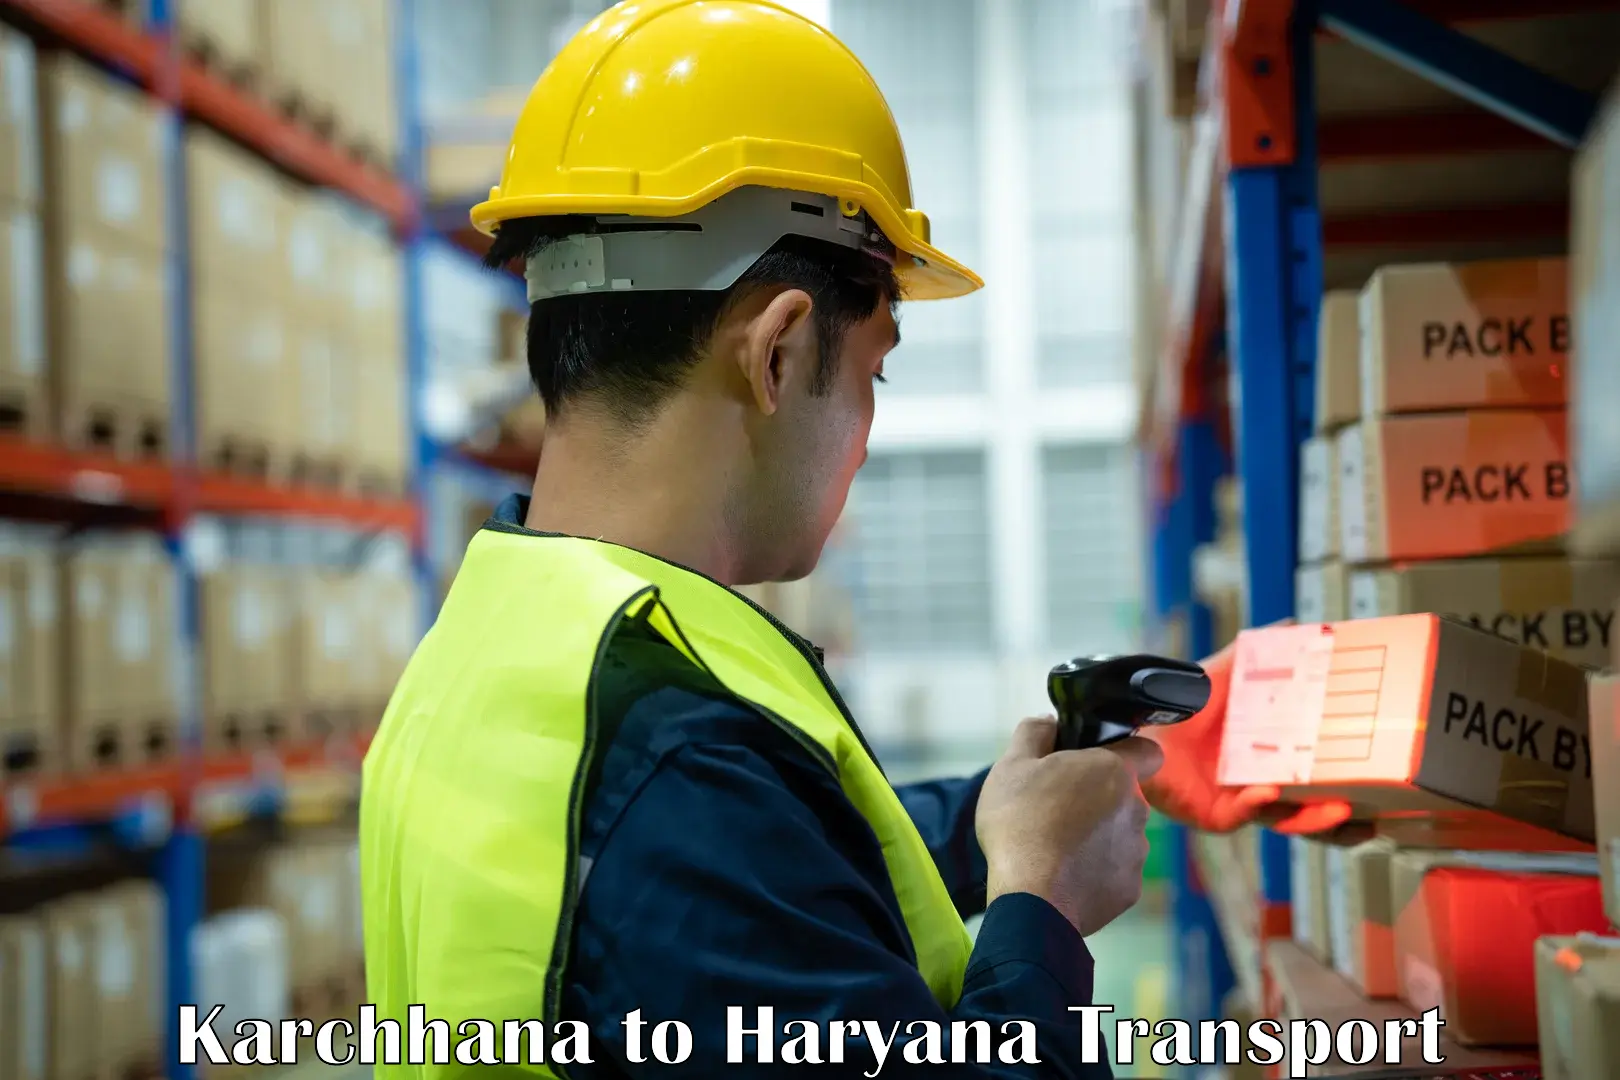 Lorry transport service Karchhana to Haryana